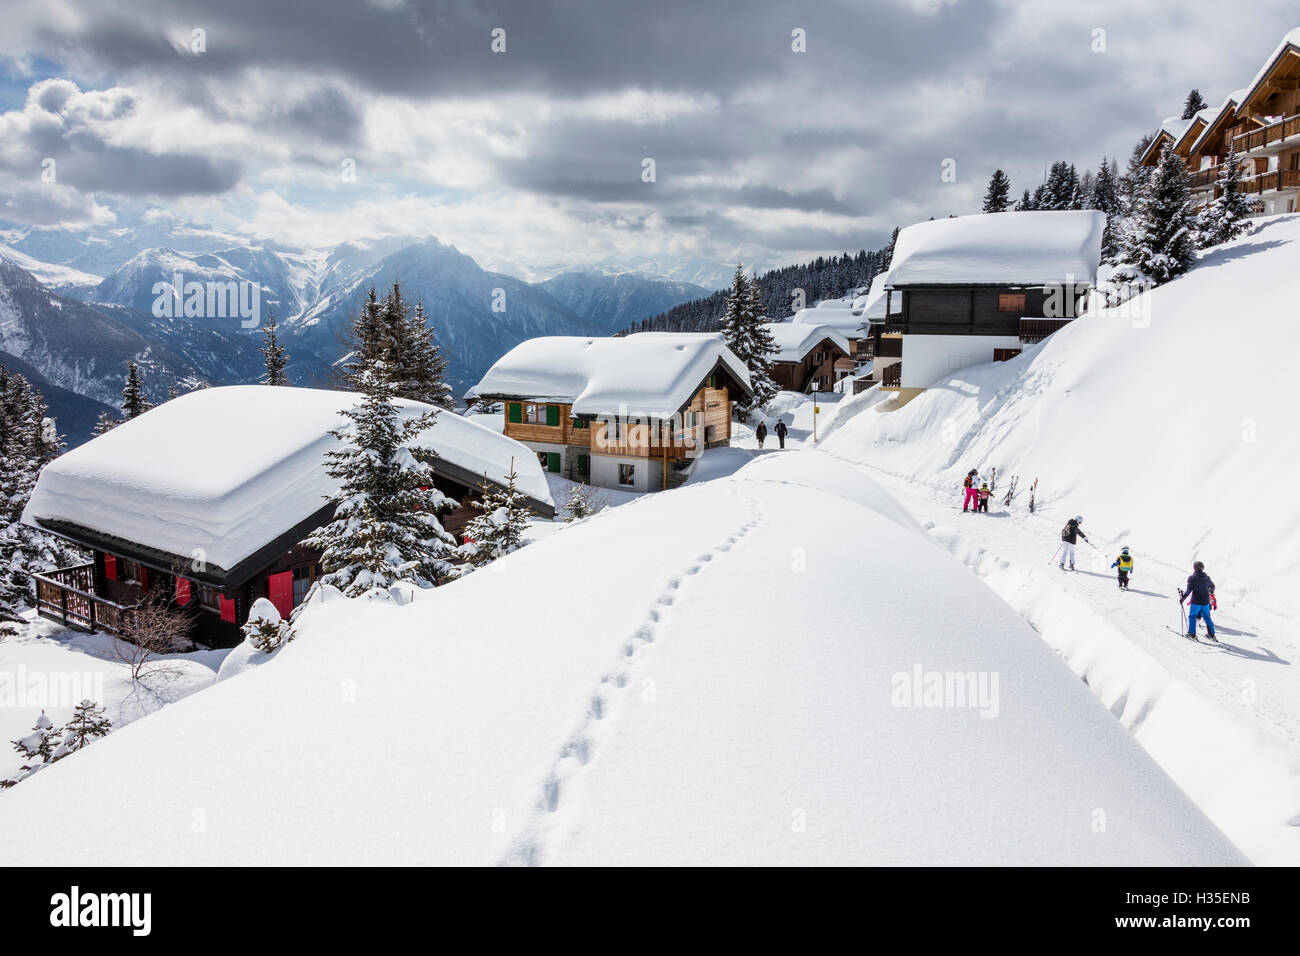 Les touristes et les skieurs appréciant le paysage enneigé, Bettmeralp, district de Rarogne, canton du Valais, Suisse Banque D'Images